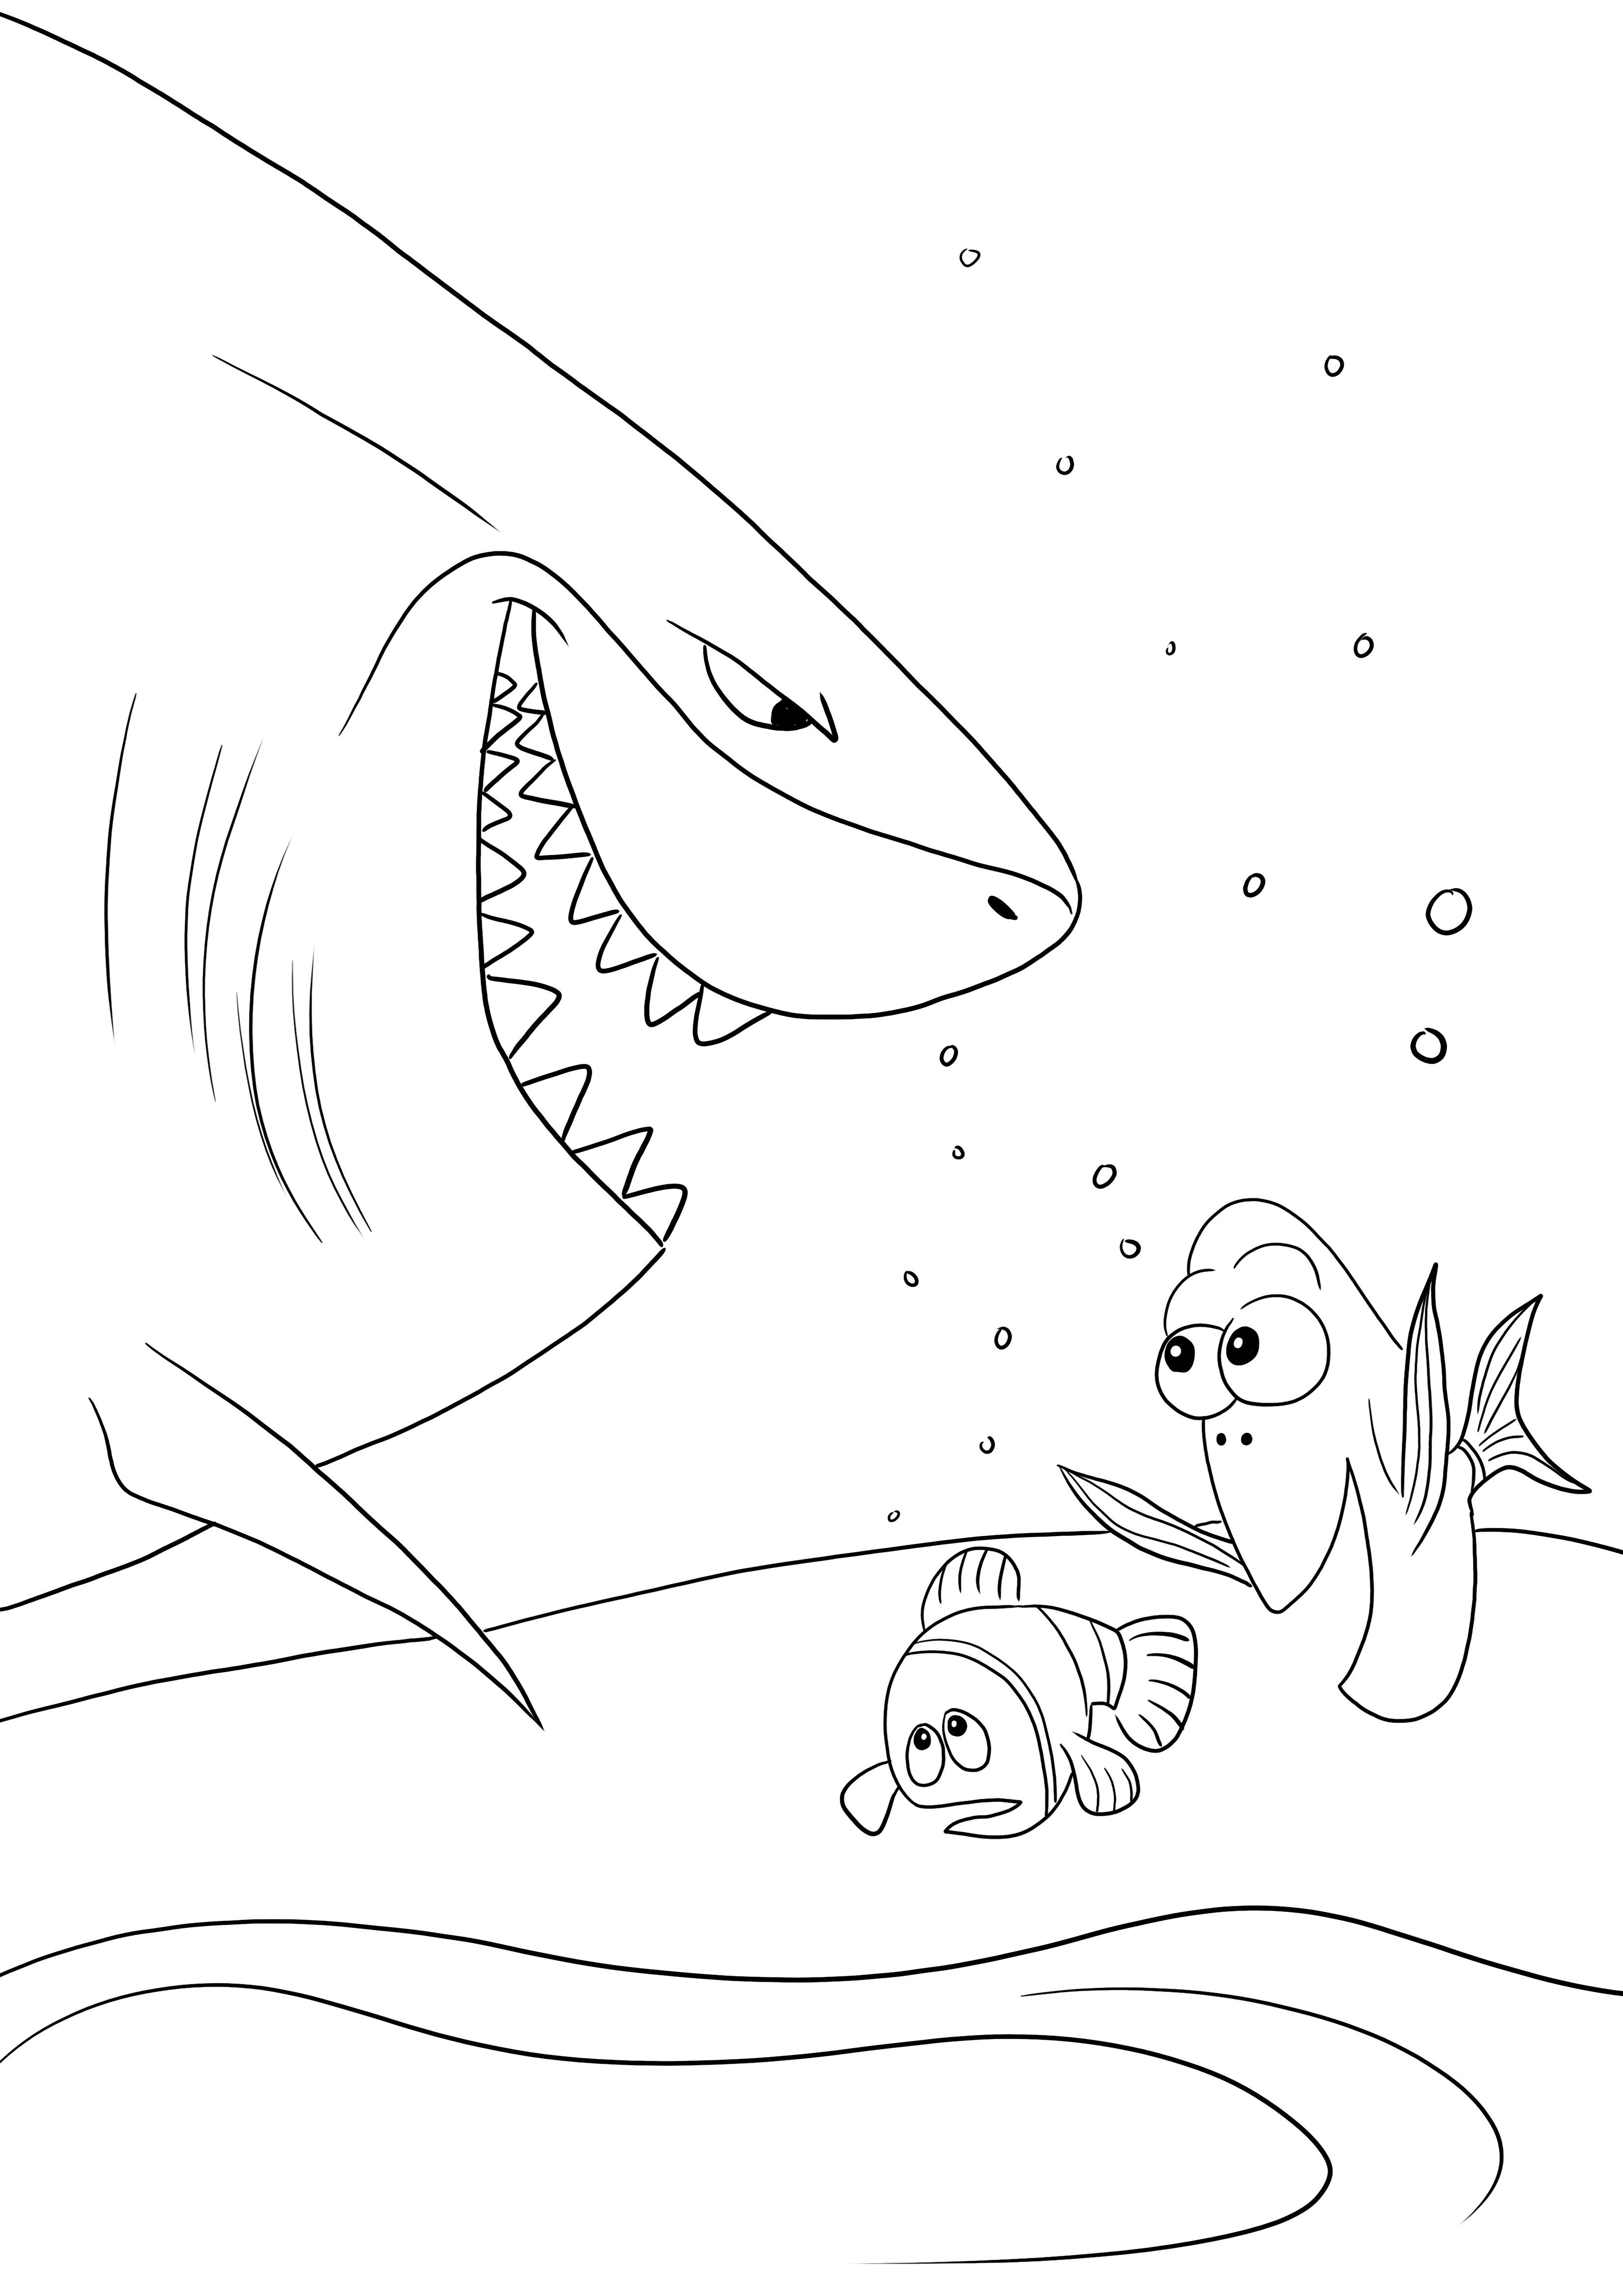 Bruce-Dory-Nemo spotykają się za darmo, aby wydrukować lub zachować do późniejszego wykorzystania